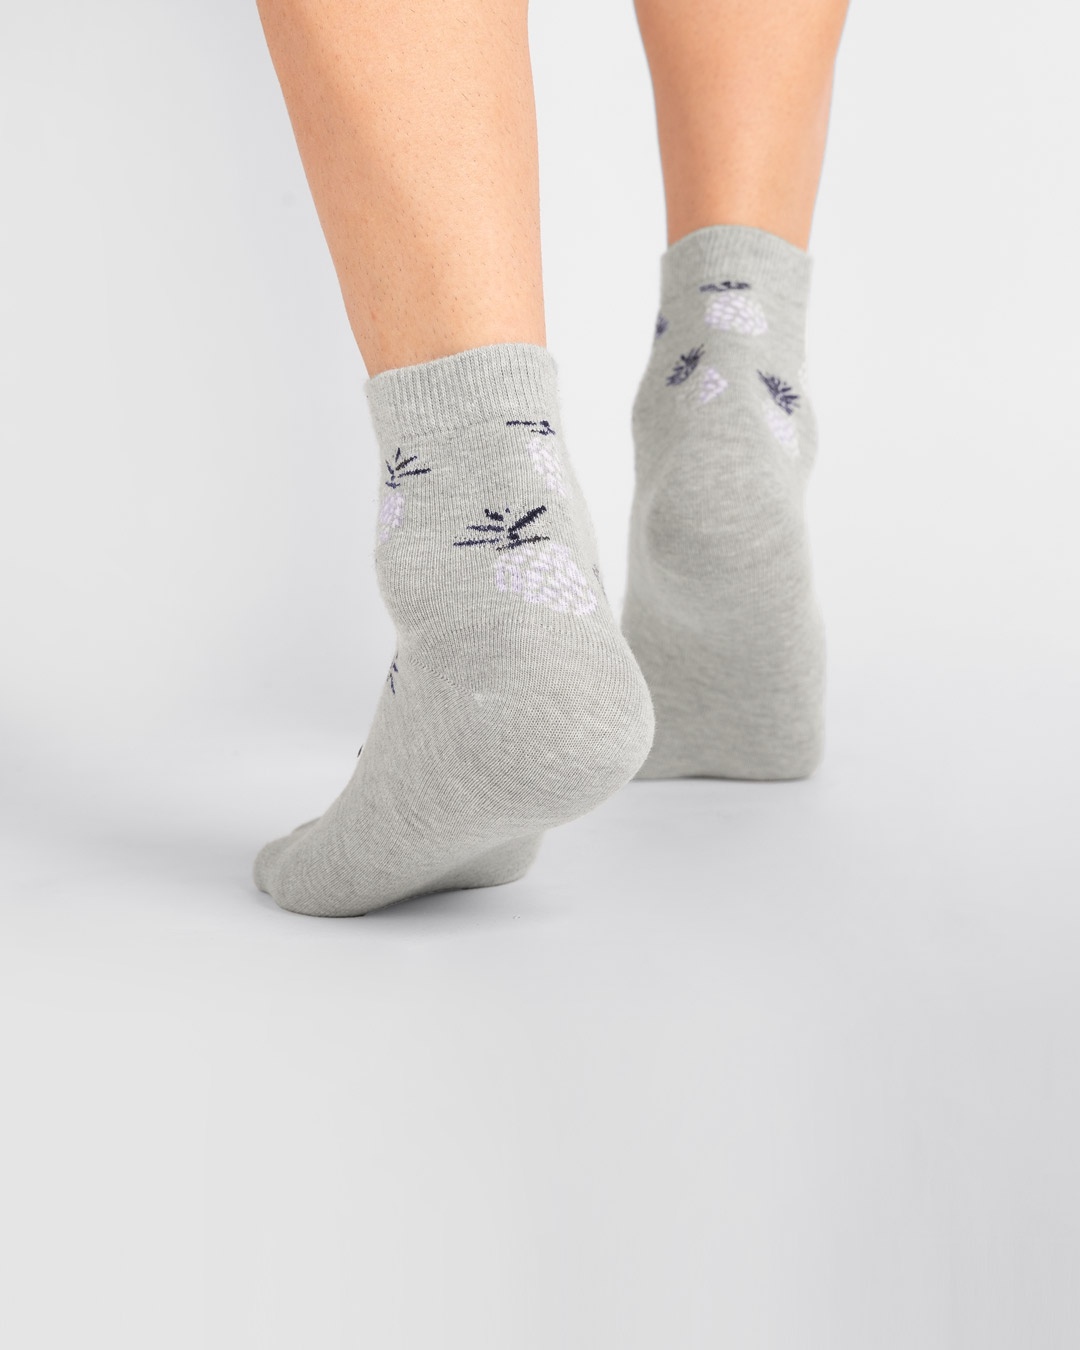 Shop Men's Pineapple Squash Ankle Length Socks